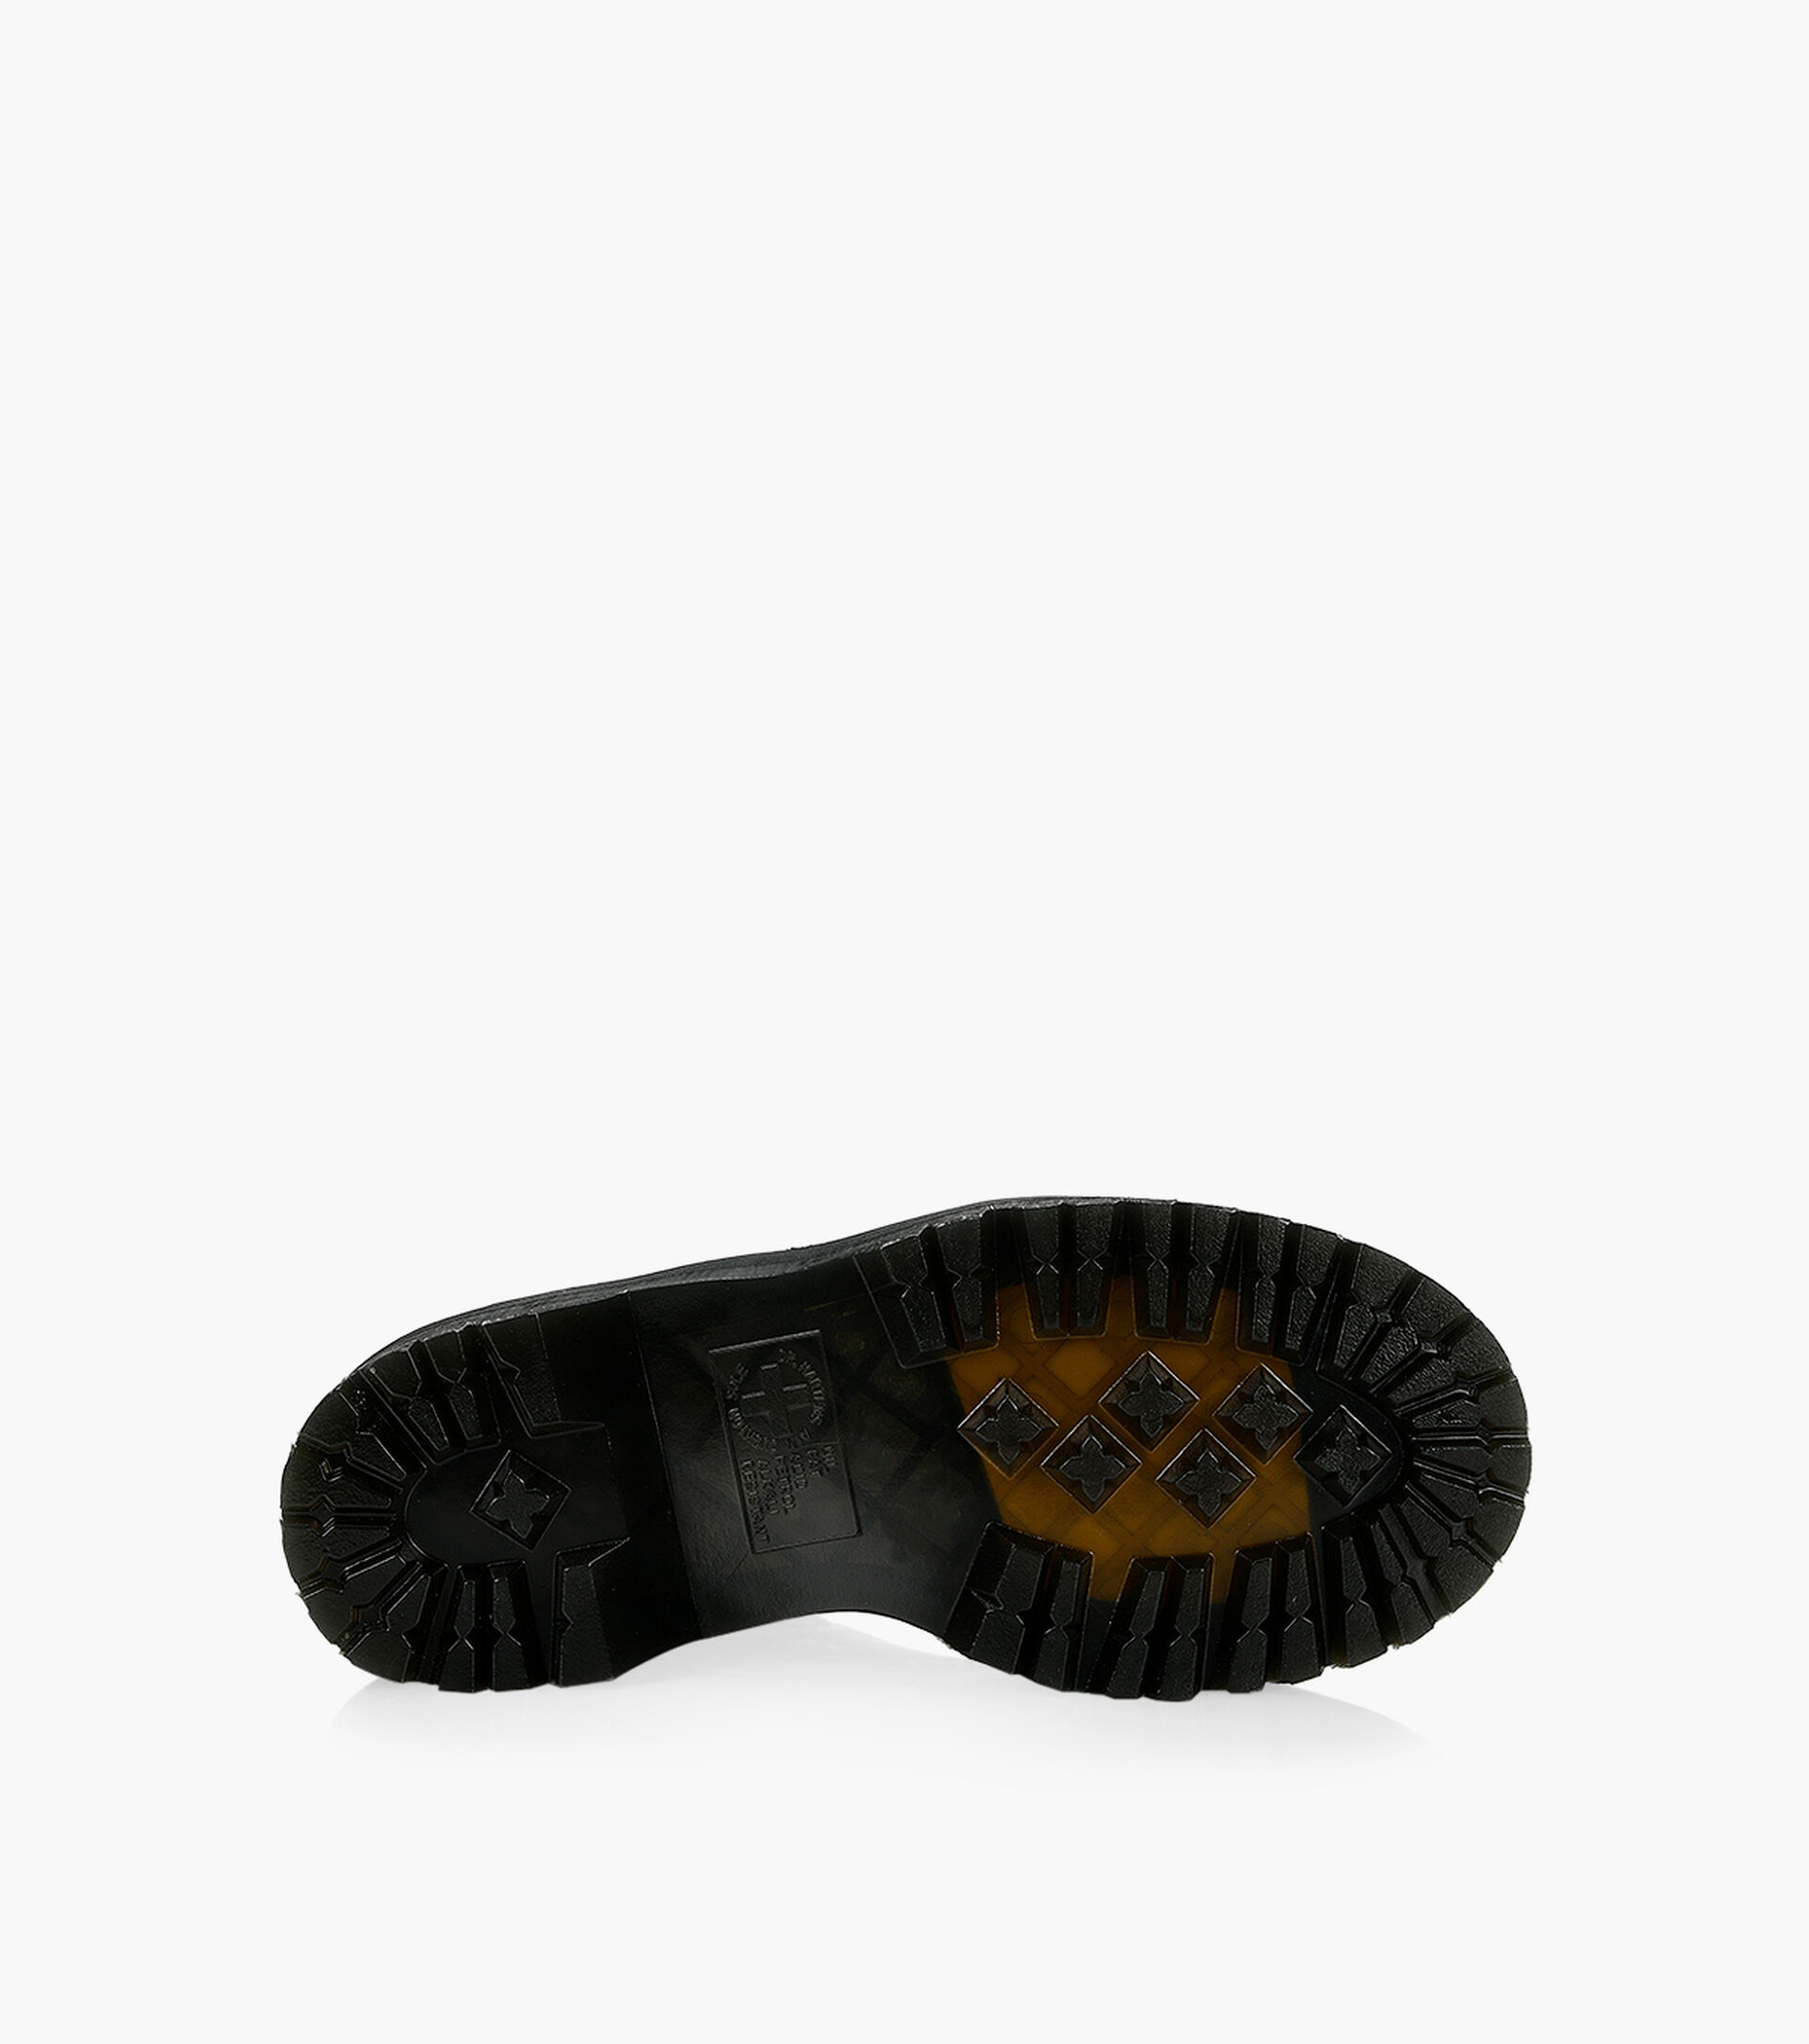 DR. MARTENS 8053 QUAD PLATFORM - Black Leather | Browns Shoes